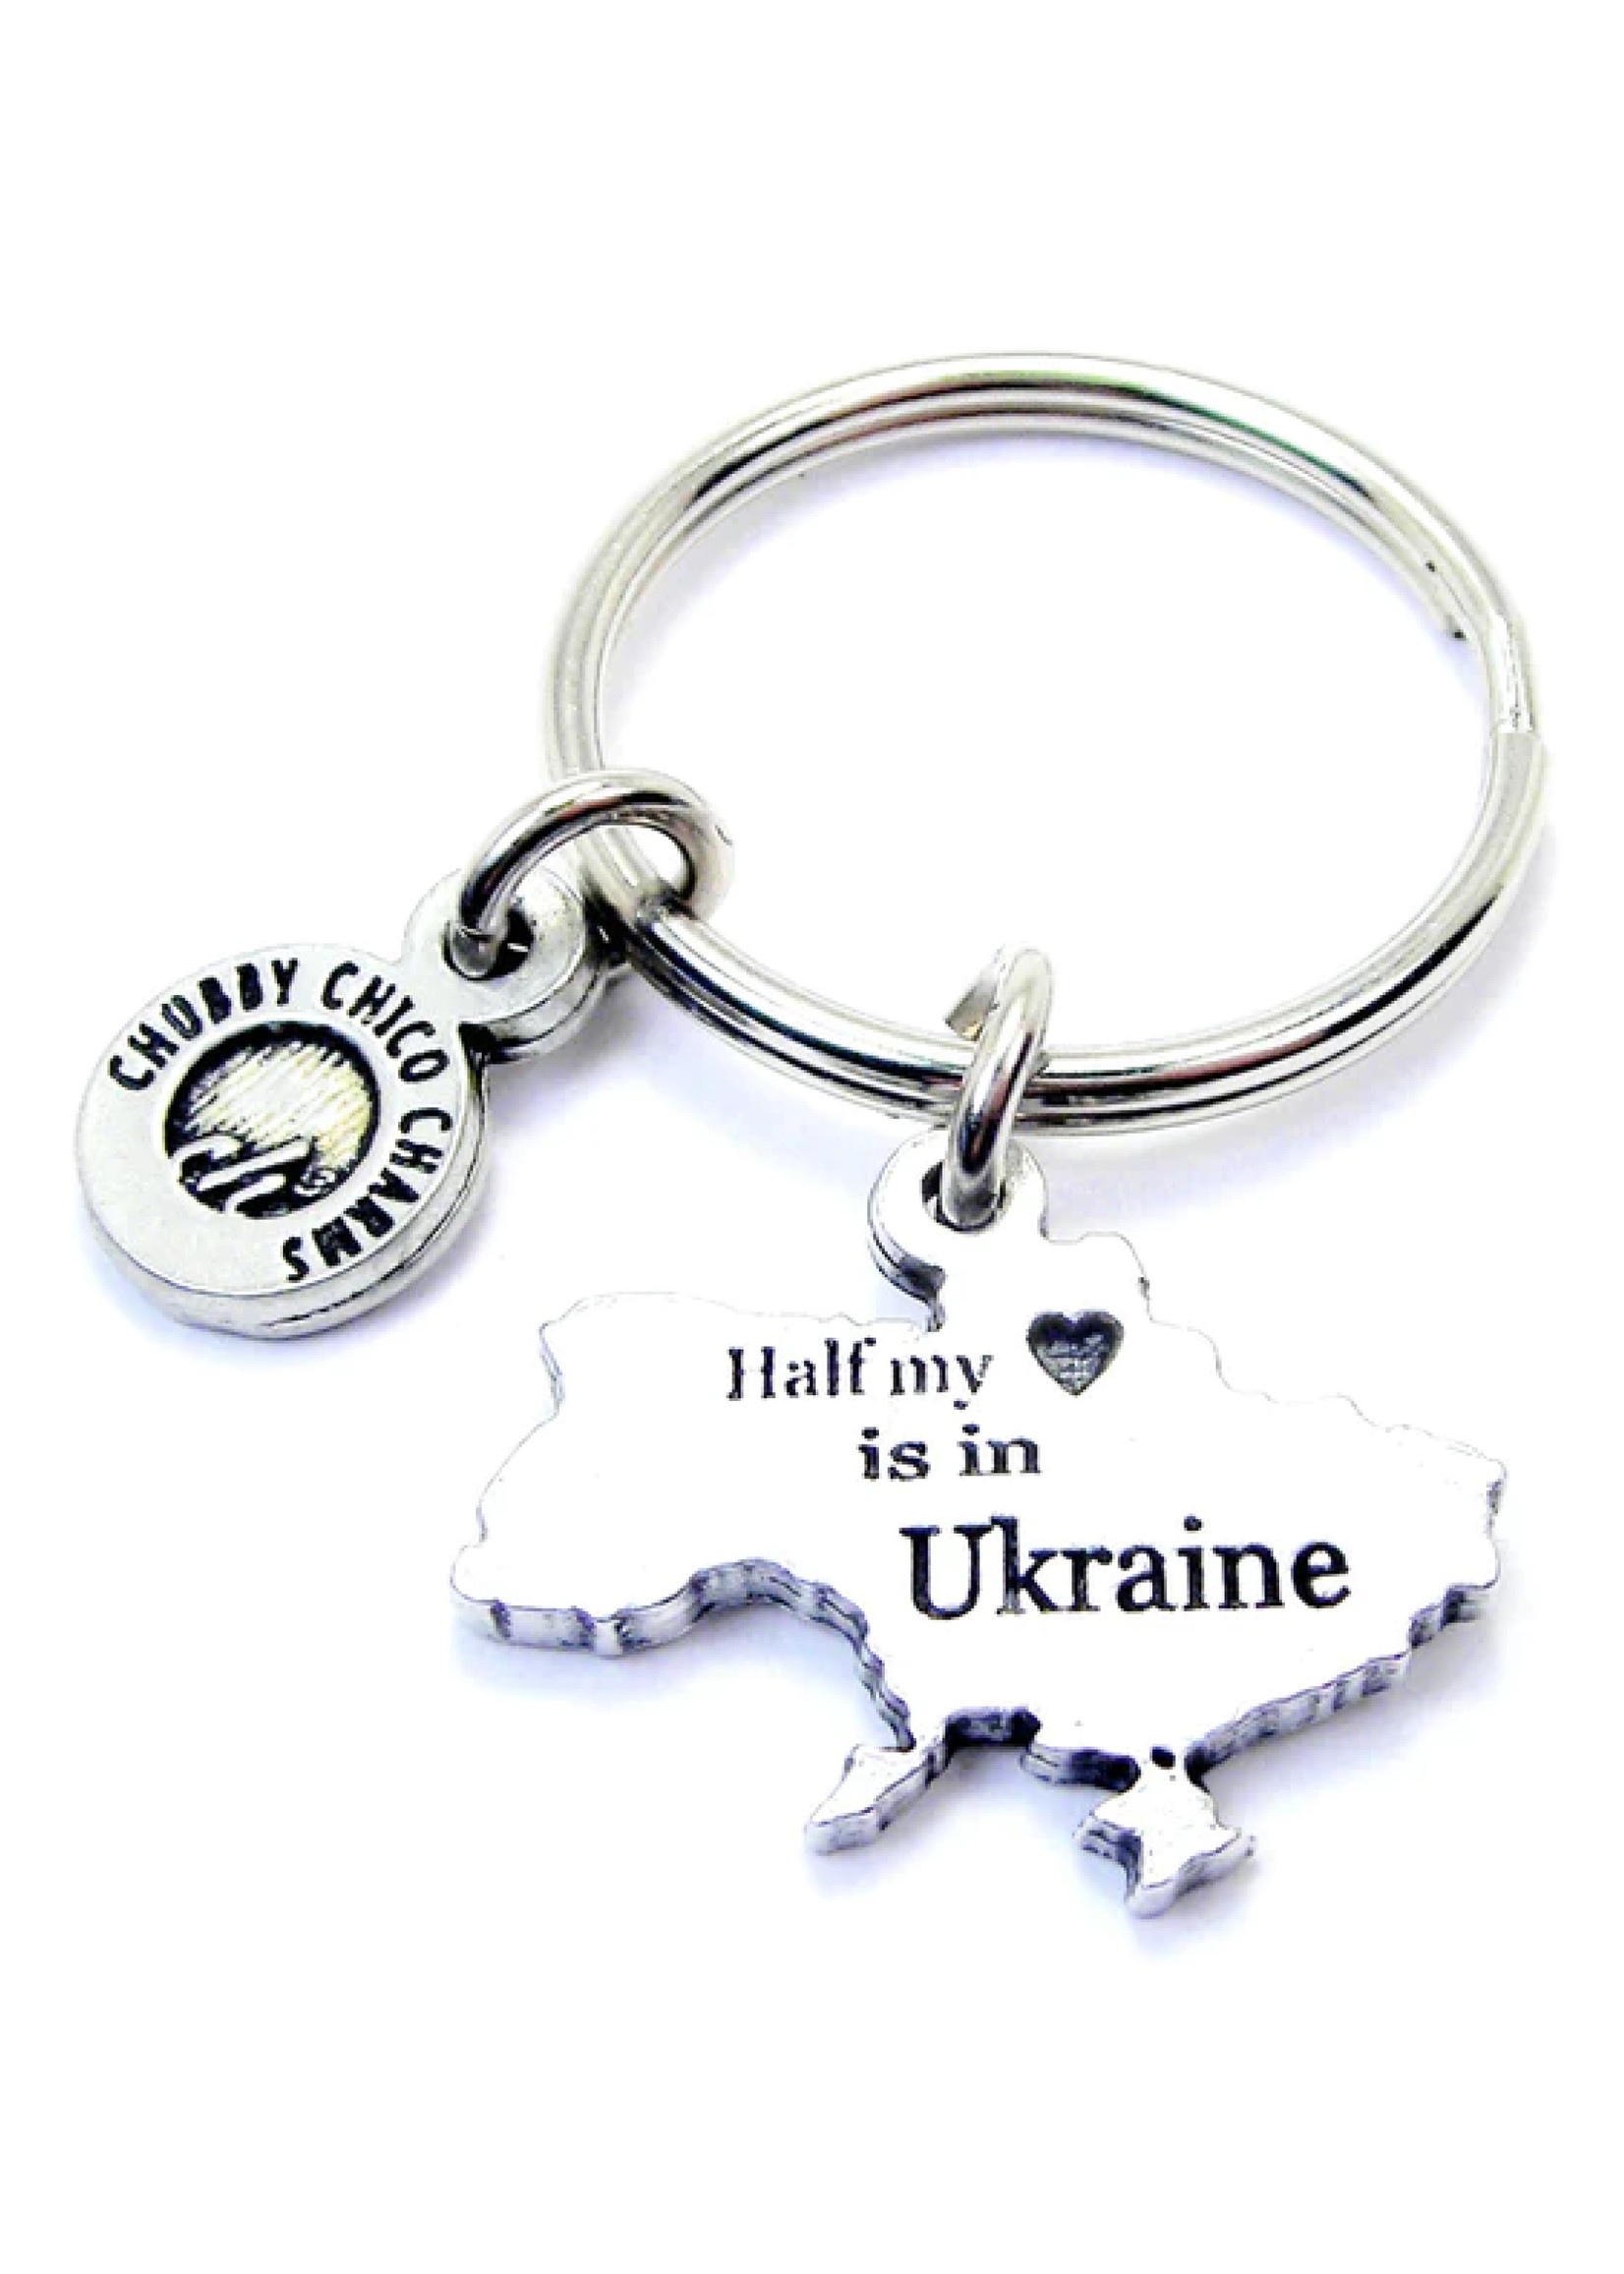 Half my heart is in Ukraine keychain